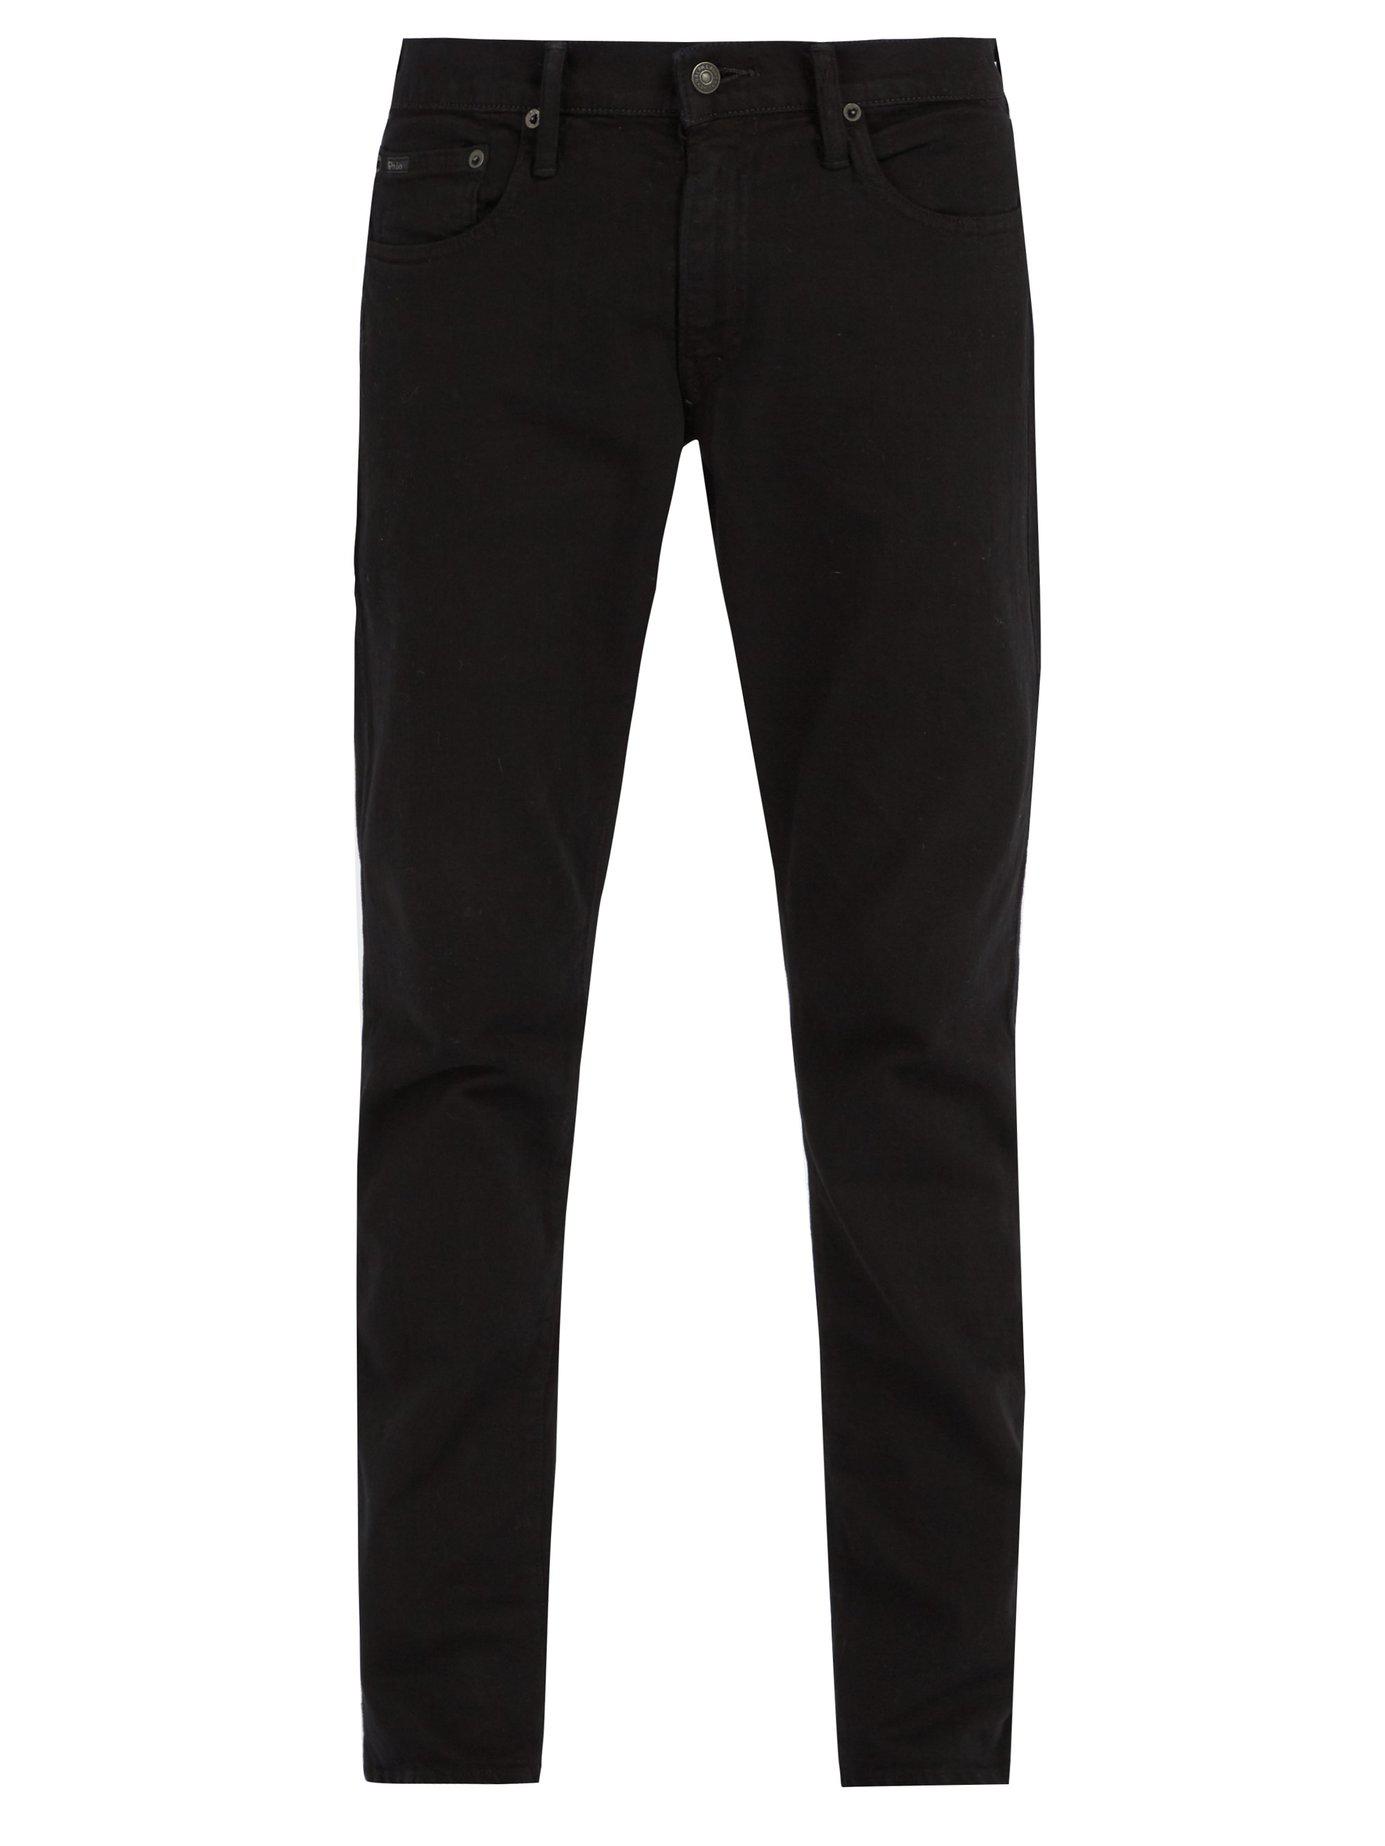 Polo Ralph Lauren Denim Sullivan Slim Leg Jeans in Black for Men - Lyst